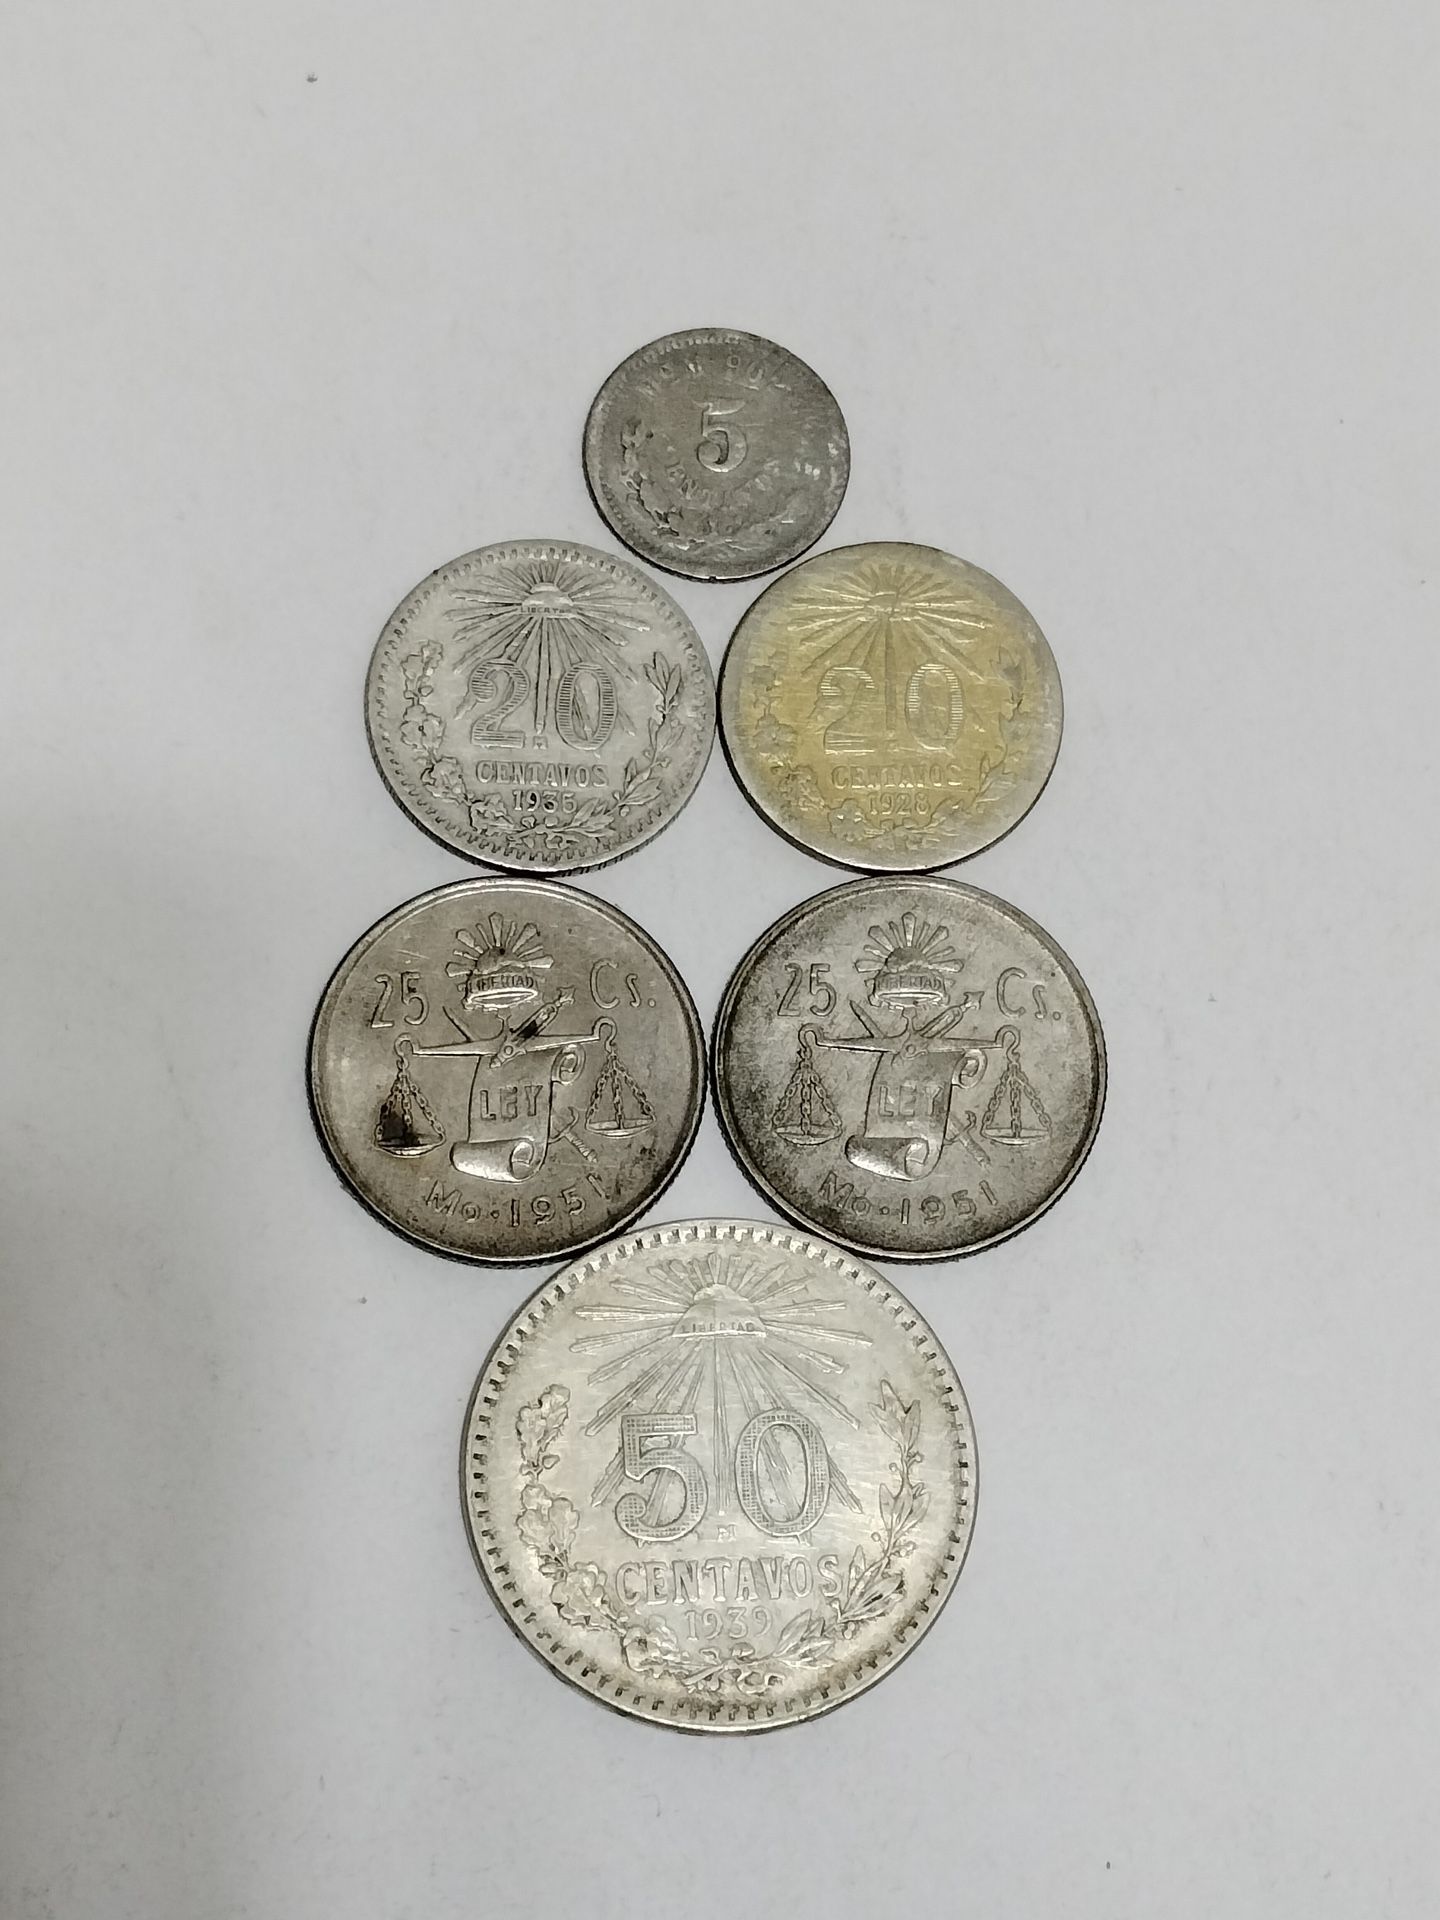 Antique Silver Mexico Coins  /  Monedas Antiguas De Plata De Mexico